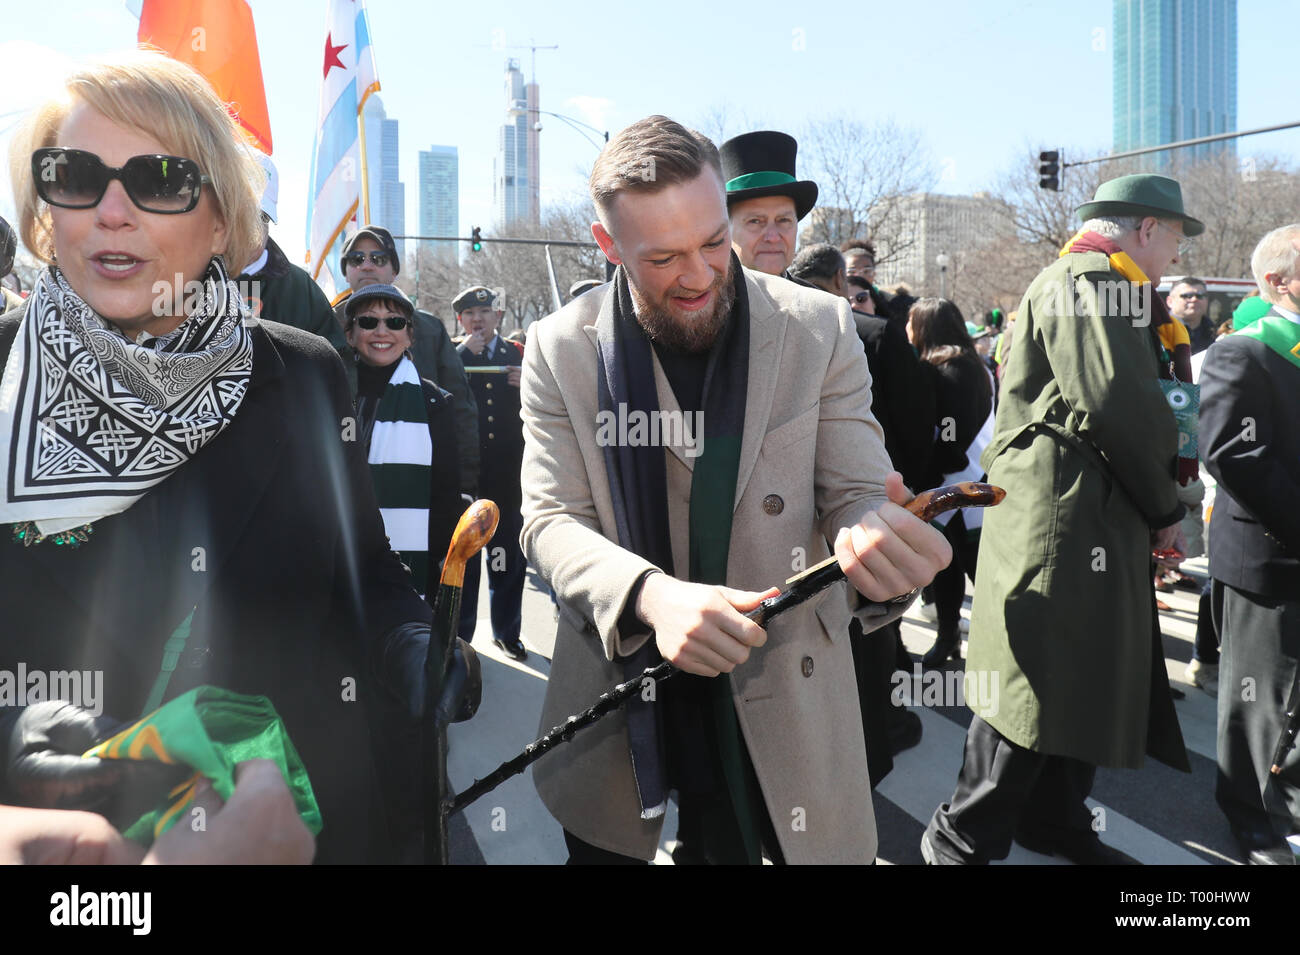 Irische Mixed Martial Artist Conor McGregor verbindet die St. Patrick's Day Parade in Chicago. Stockfoto